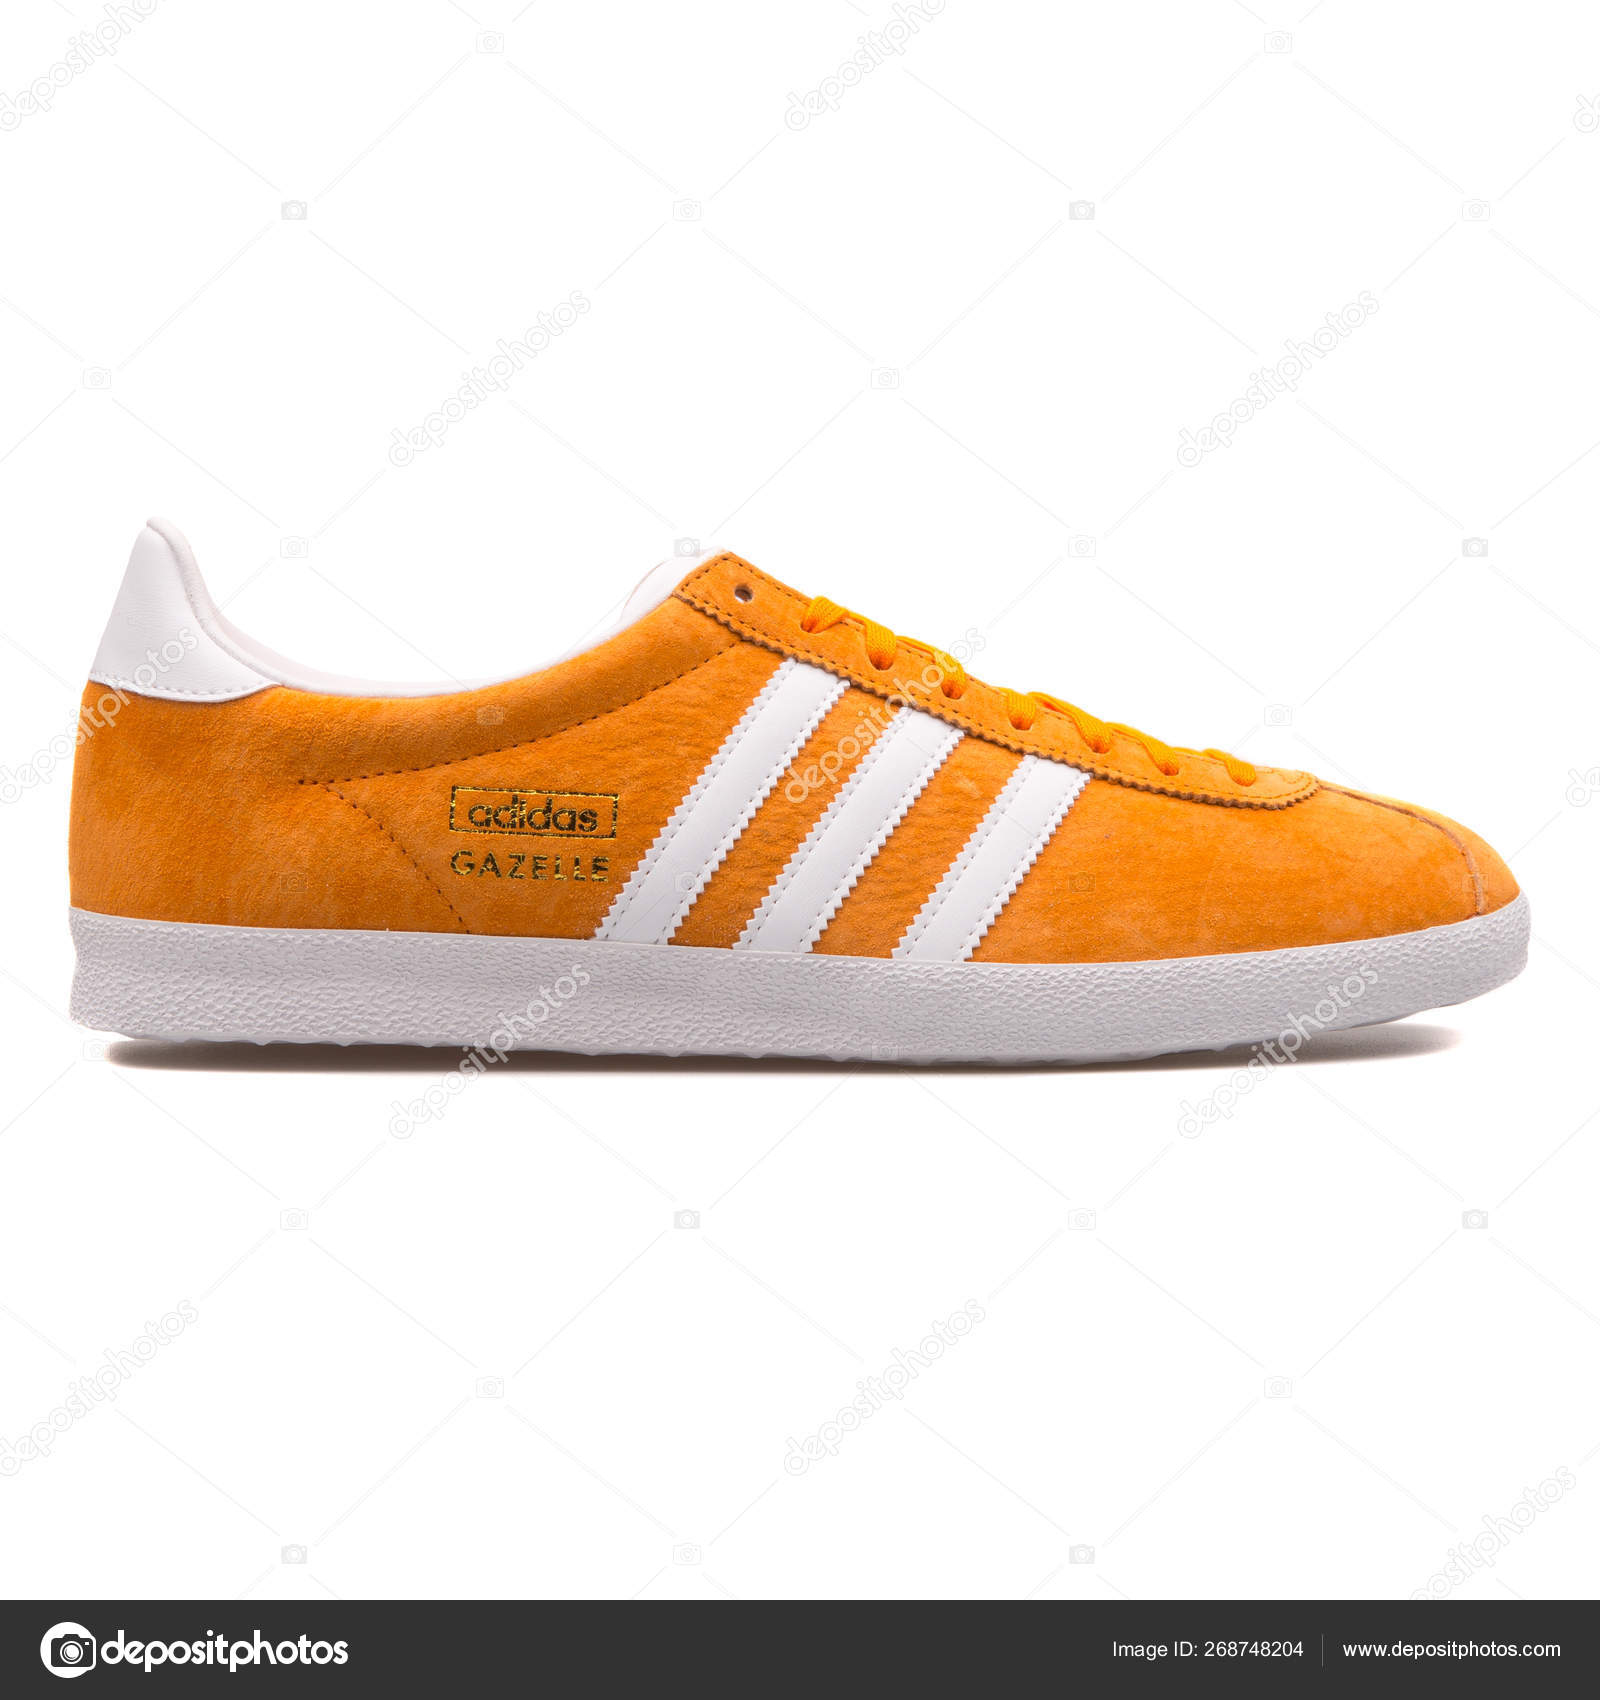 Adidas Gazelle OG orange and white 